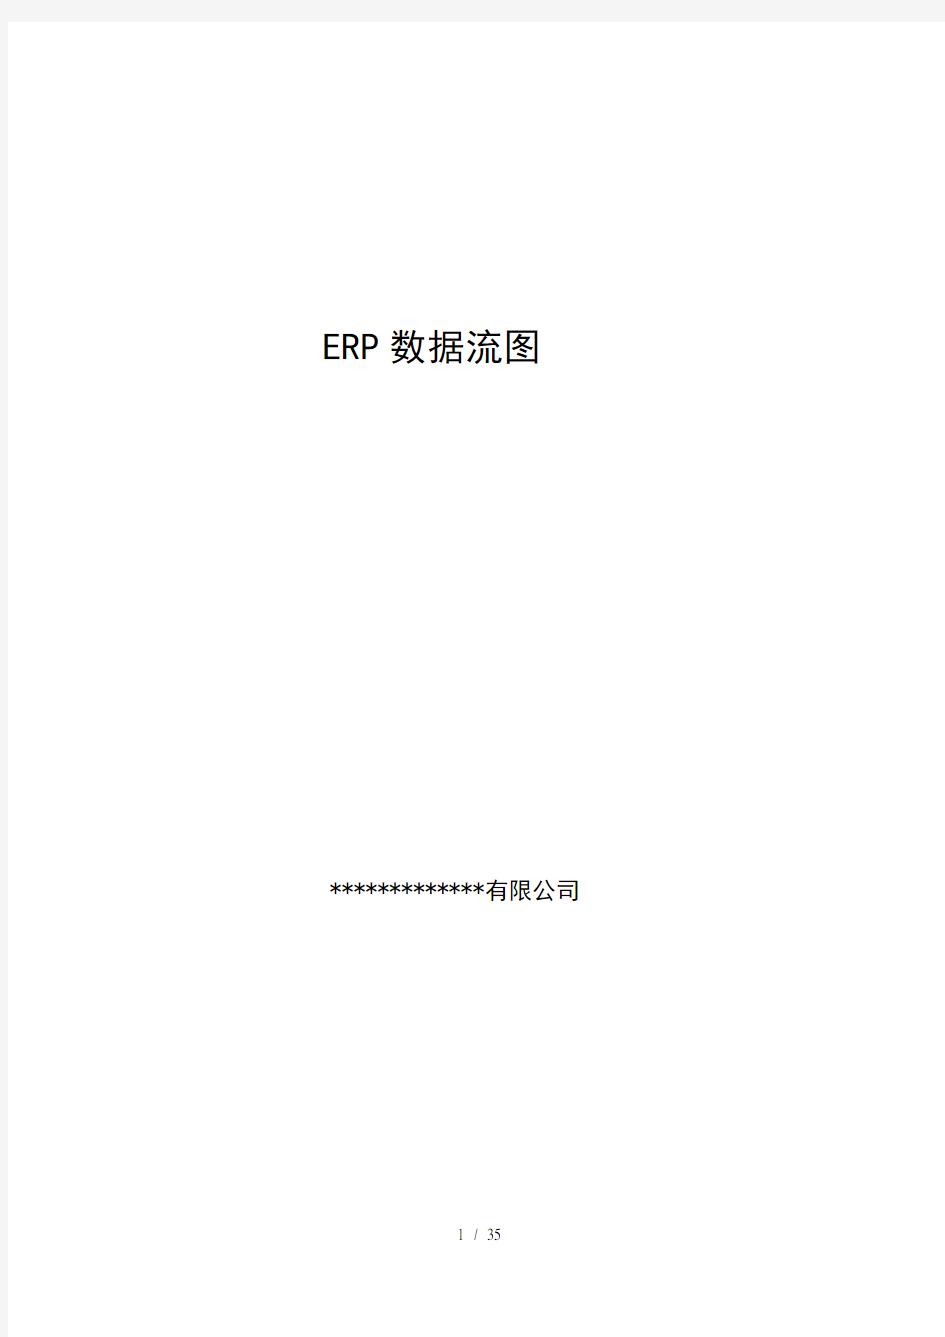 经典ERP数据流程图